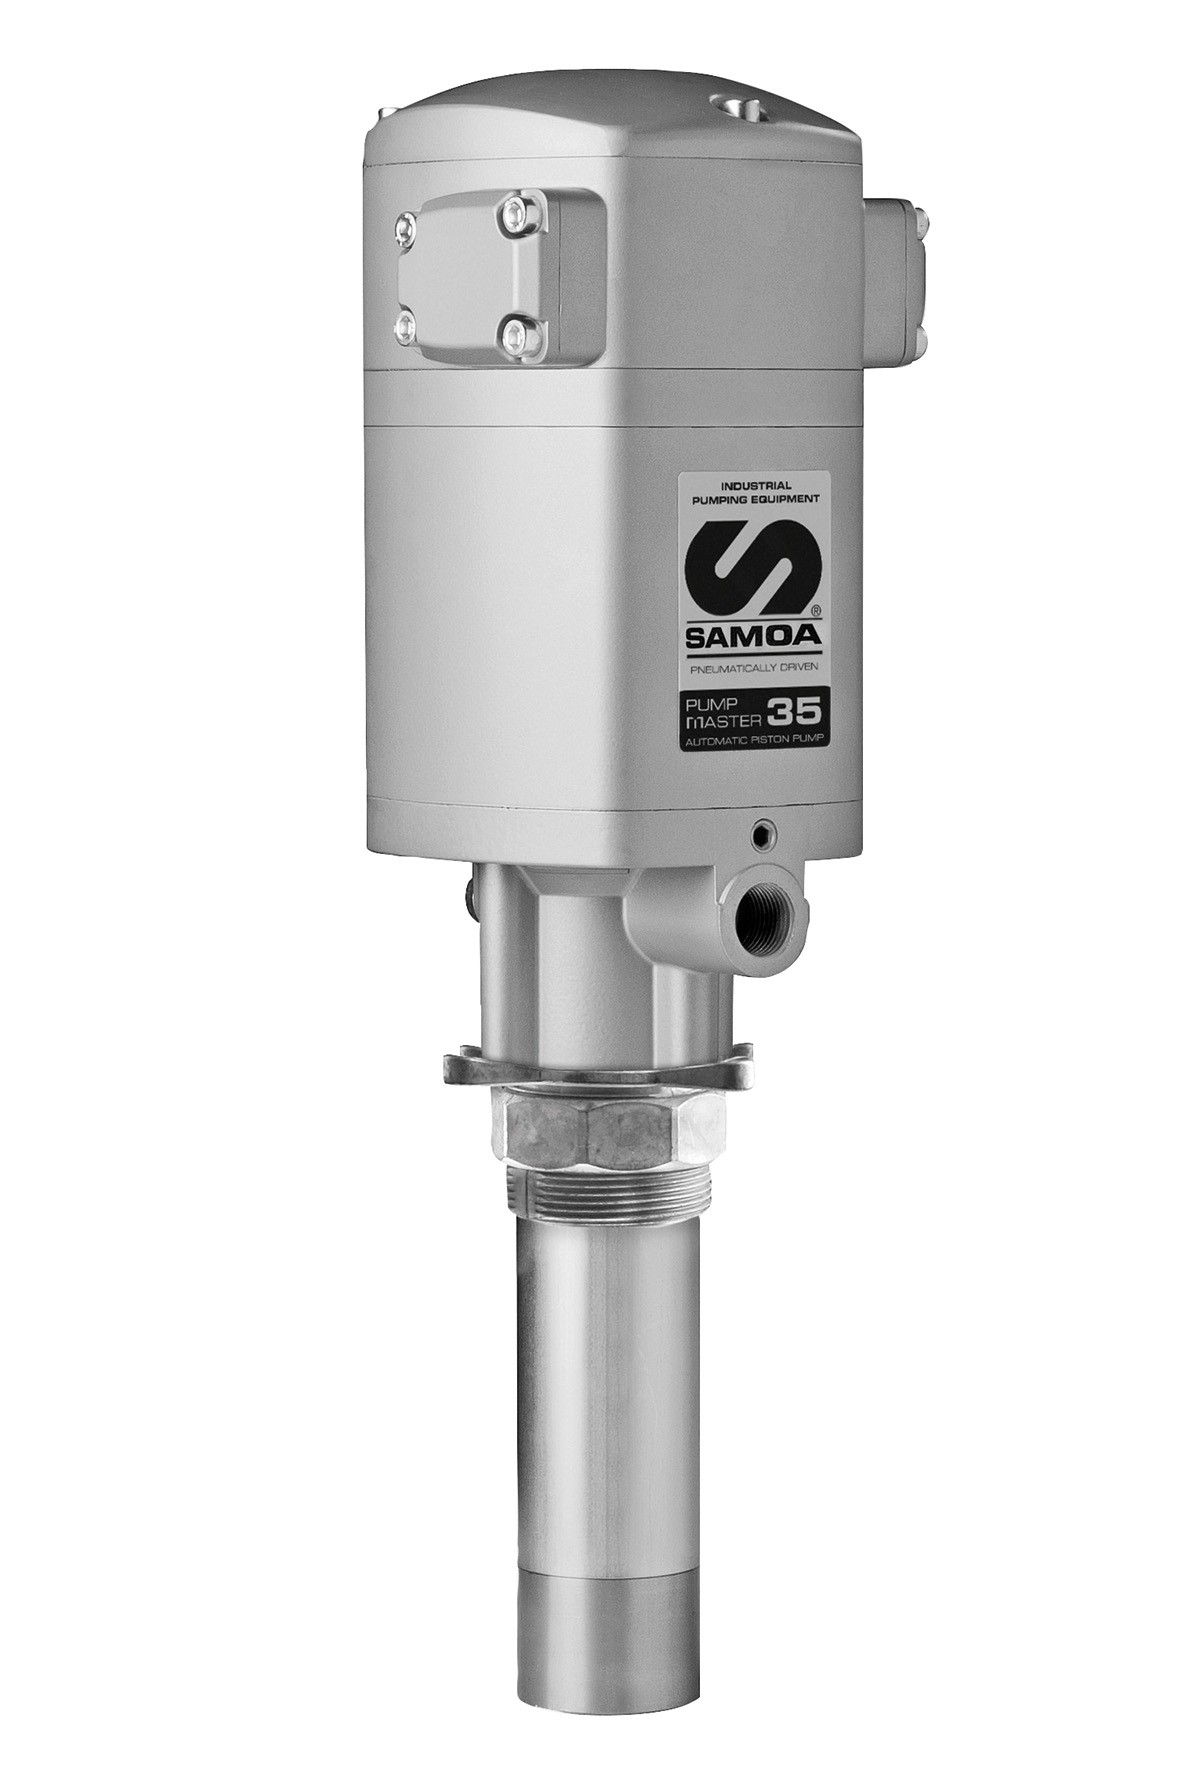 Samoa-Hallbauer Dieselpumpe/Heizölpumpe 12 V mit Kunststoff